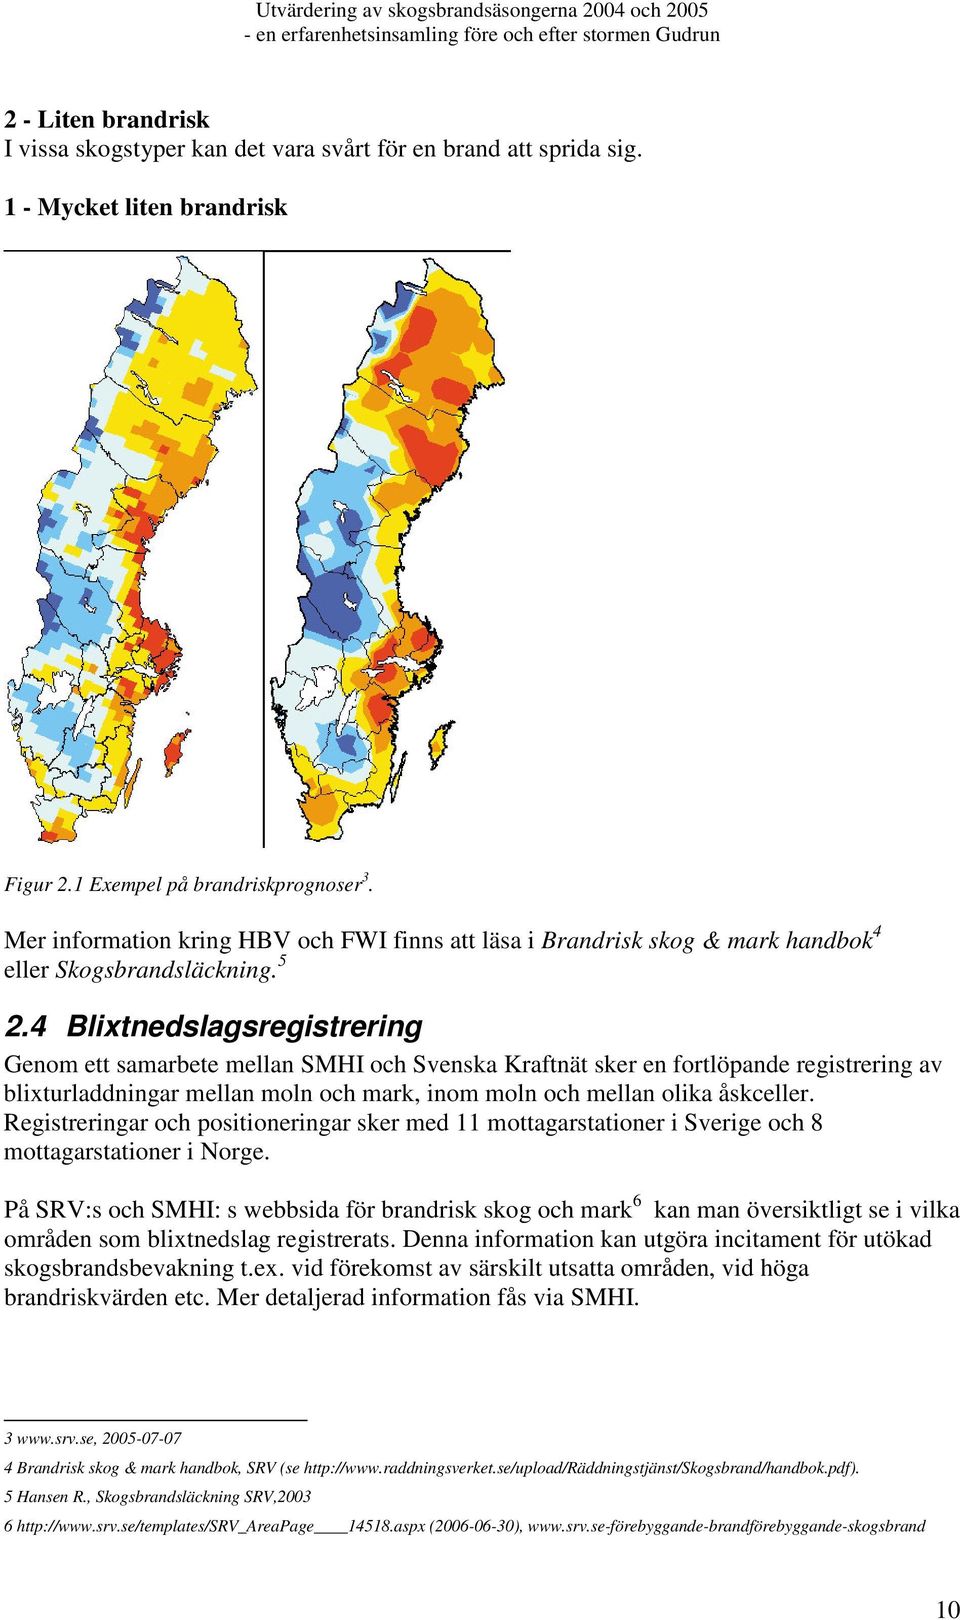 4 Blixtnedslagsregistrering Genom ett samarbete mellan SMHI och Svenska Kraftnät sker en fortlöpande registrering av blixturladdningar mellan moln och mark, inom moln och mellan olika åskceller.